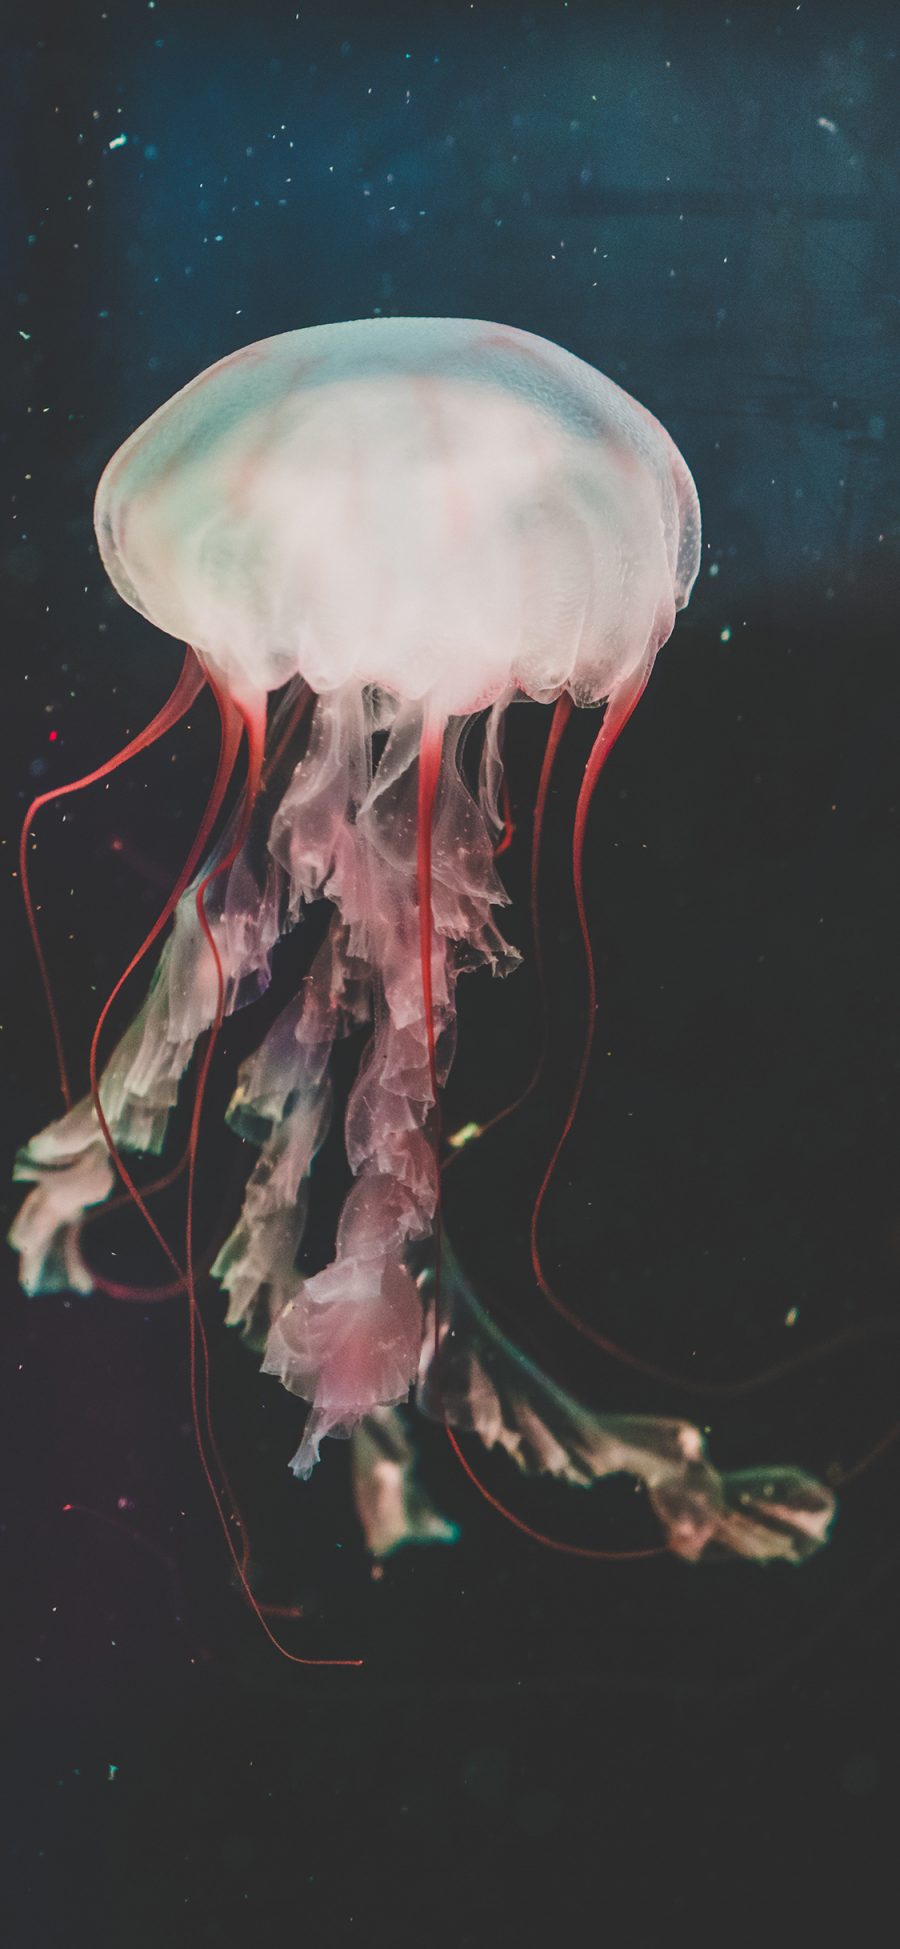 [2436×1125]水母 触手 海洋生物 浮游 苹果手机壁纸图片